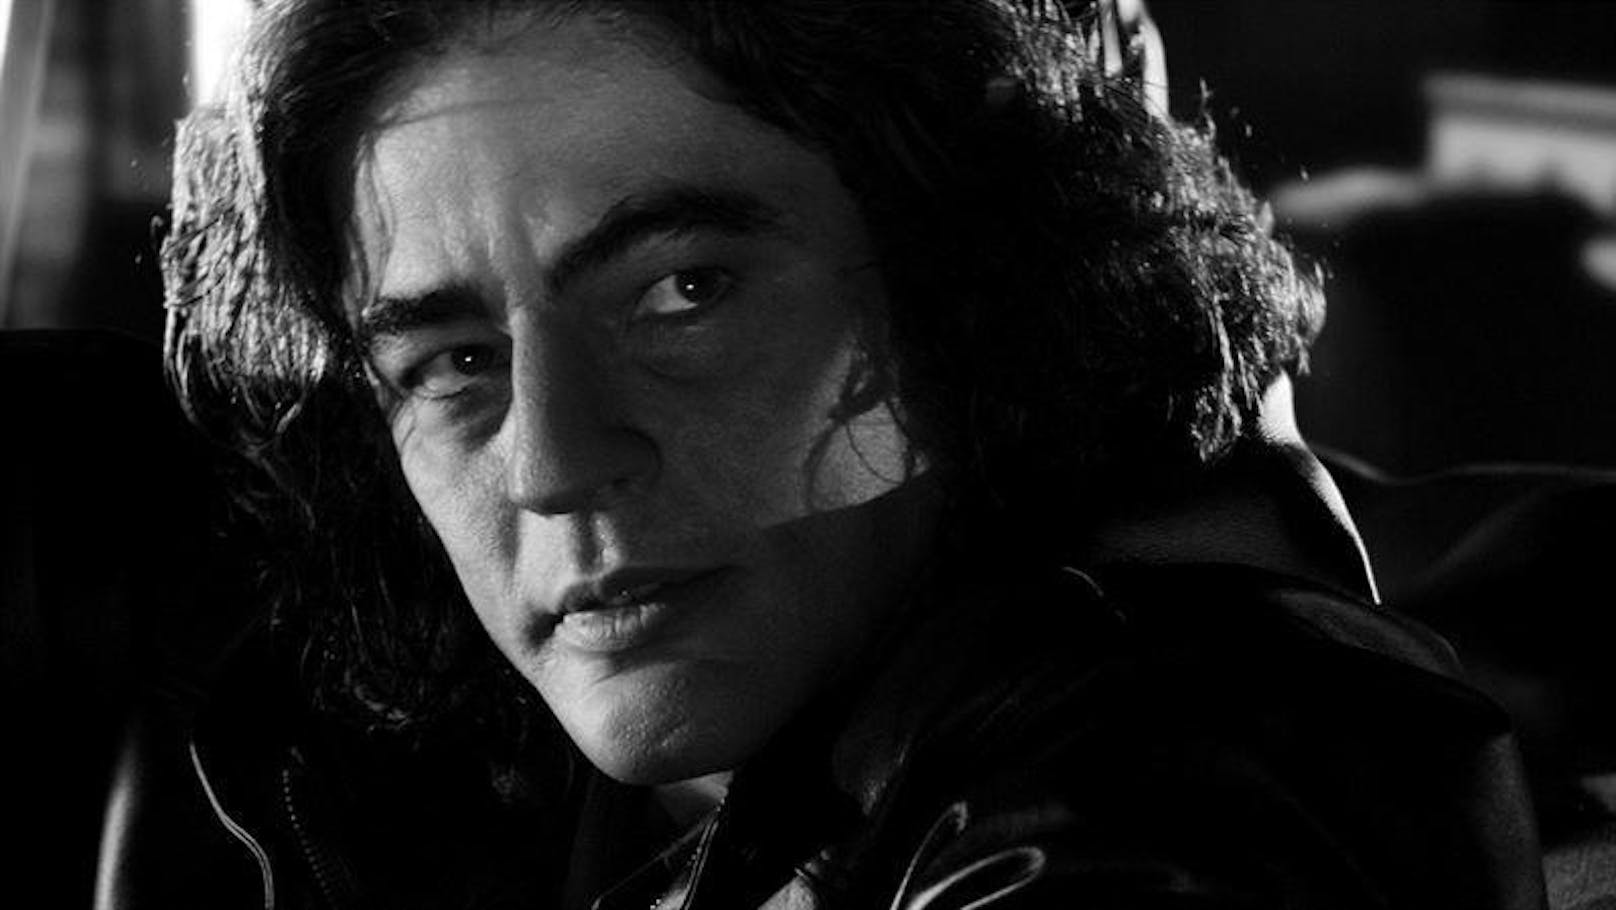 Benicio Del Toro in "Sin City"